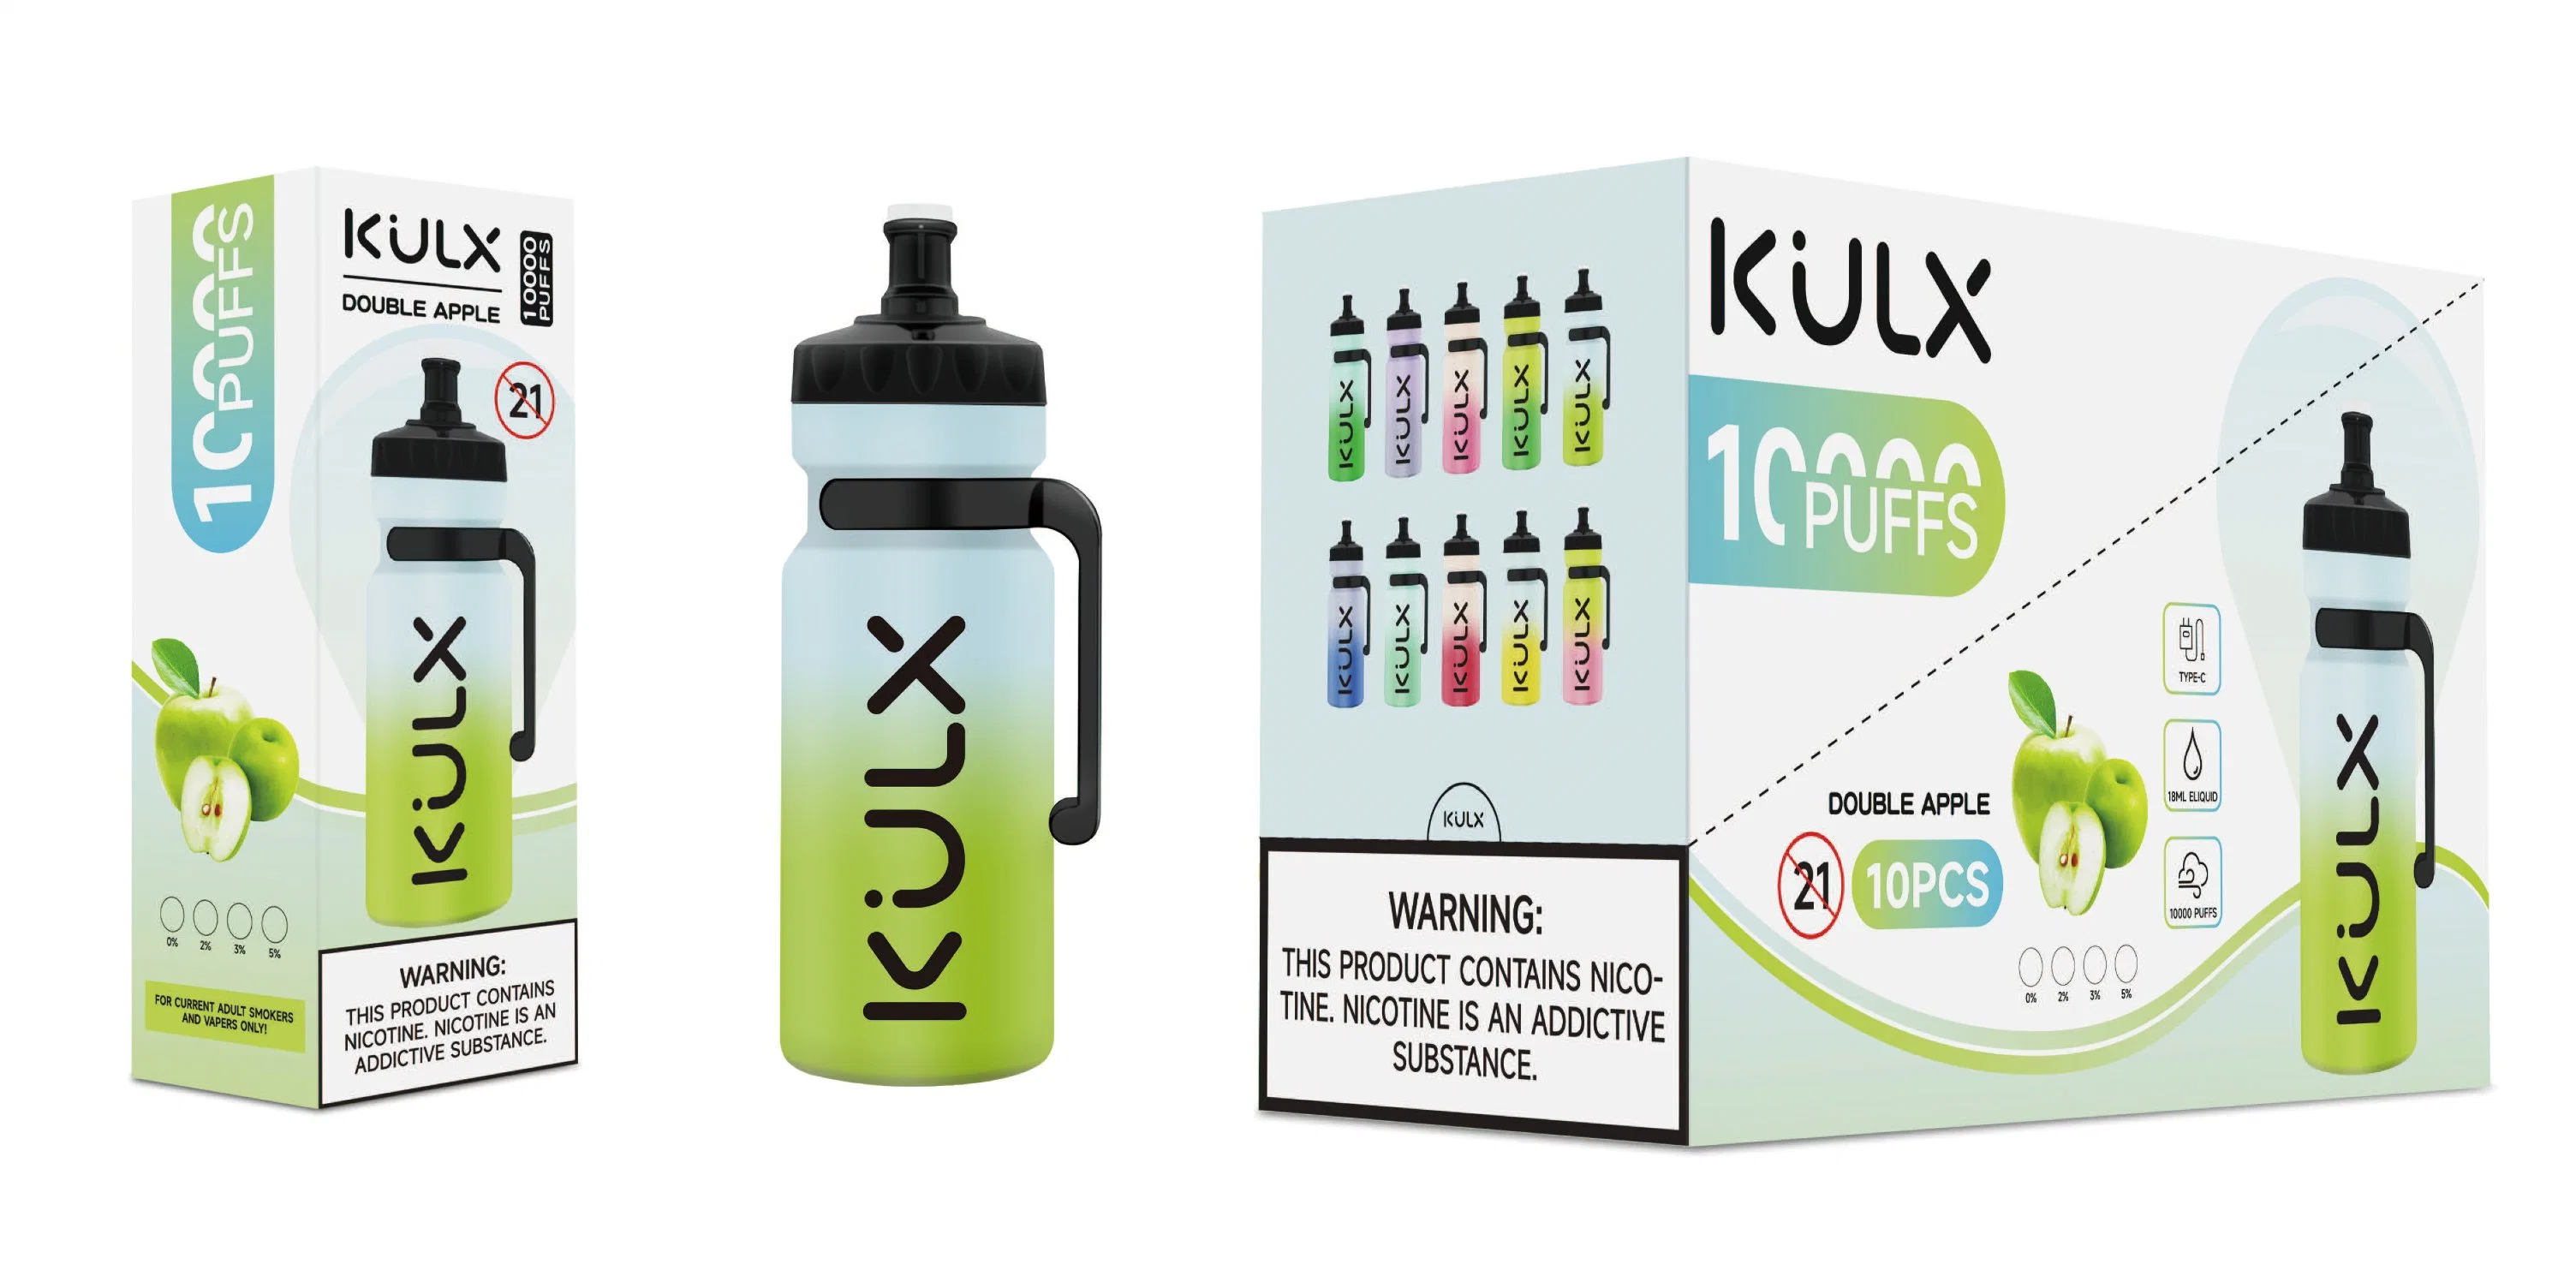 China Wholesale Kulx personalizados 10000 Puff puffs de pluma de la barra de Amazon Precio cigarrillos baratos narguile E jugo de la bobina de malla de Vape vaporizador electrónico desechable